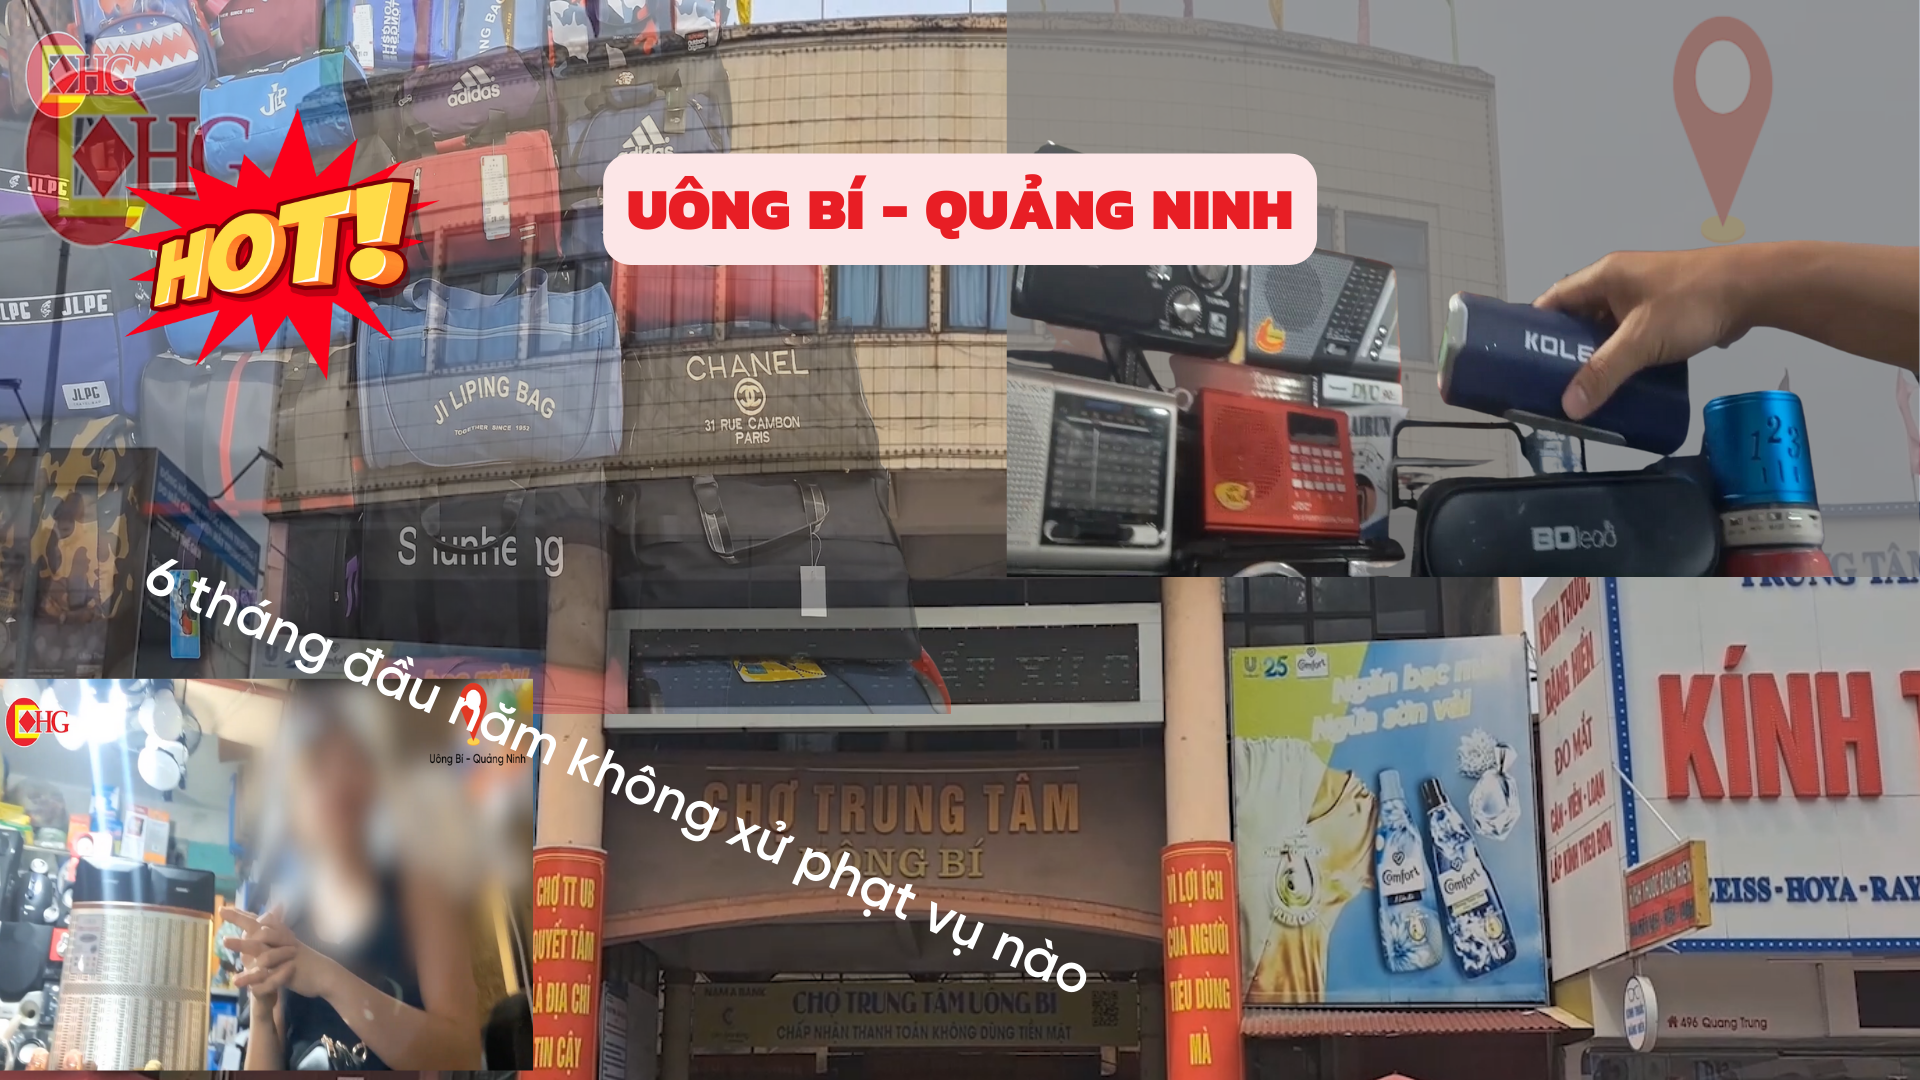 Chợ trung tâm Uông Bí (Quảng Ninh): Tràn lan vi phạm về hàng hóa